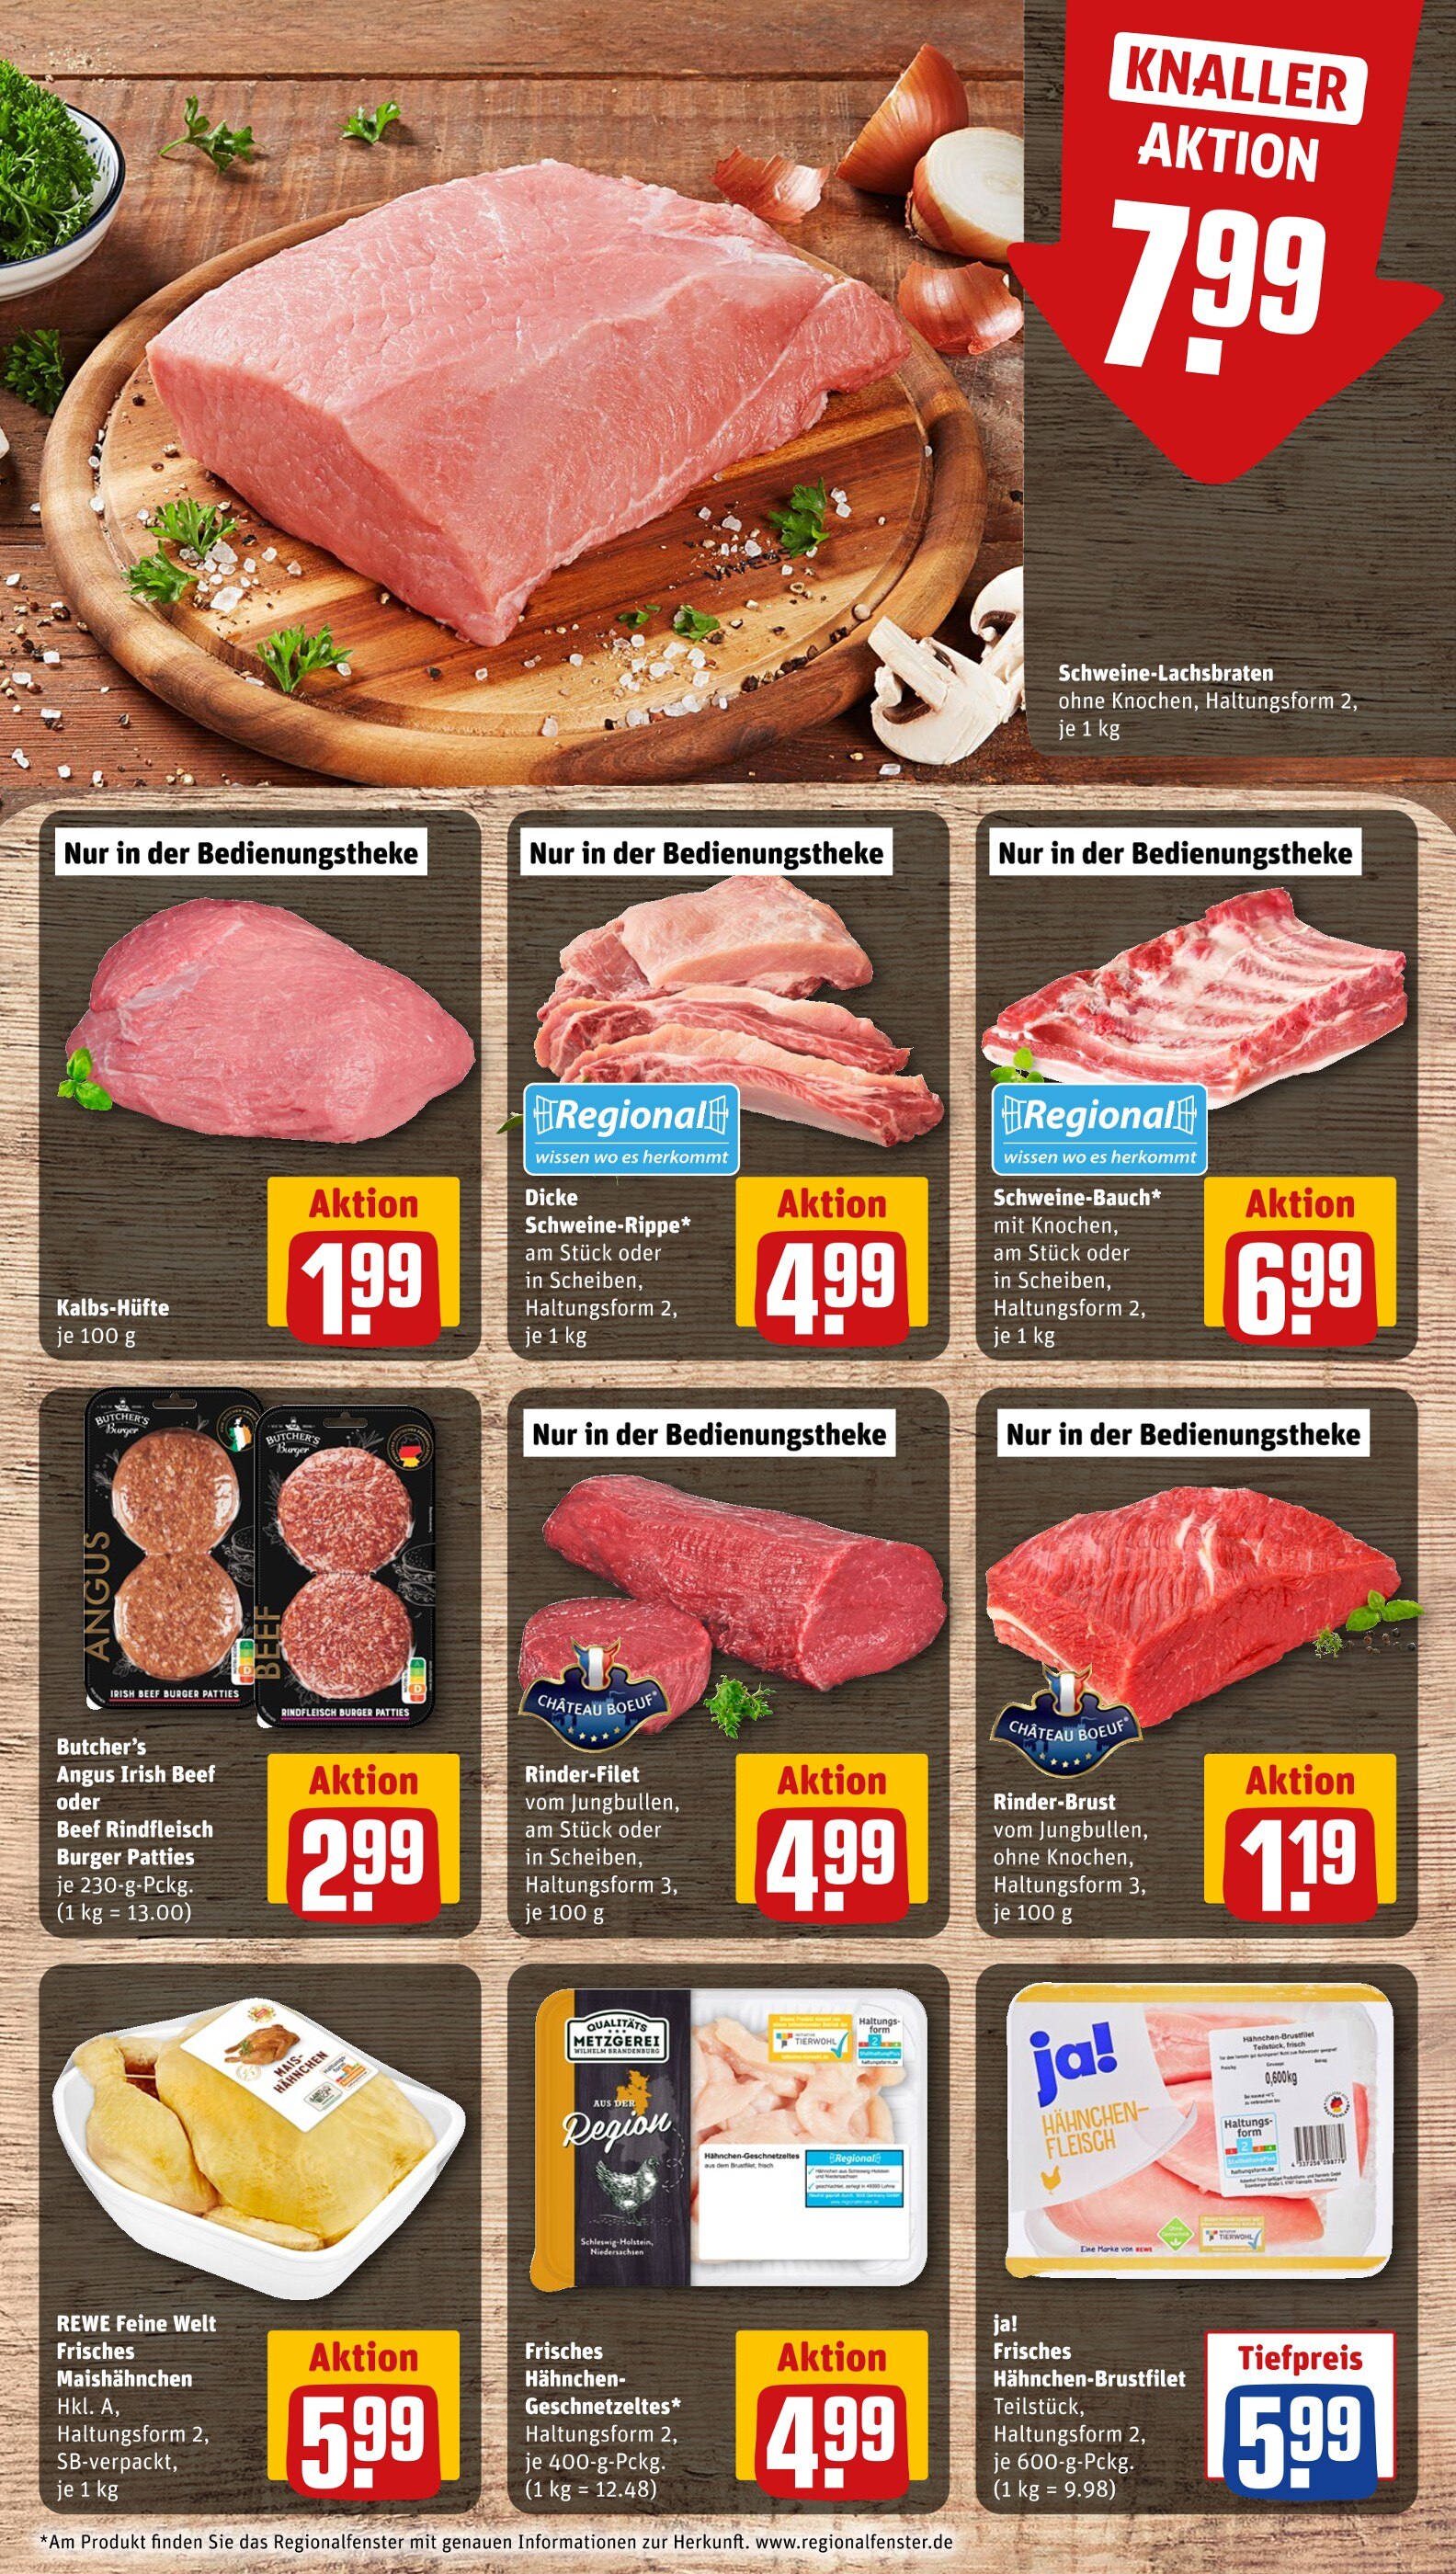 Braunschweig günstig Steak jetzt Angebote 🔥 in - kaufen!